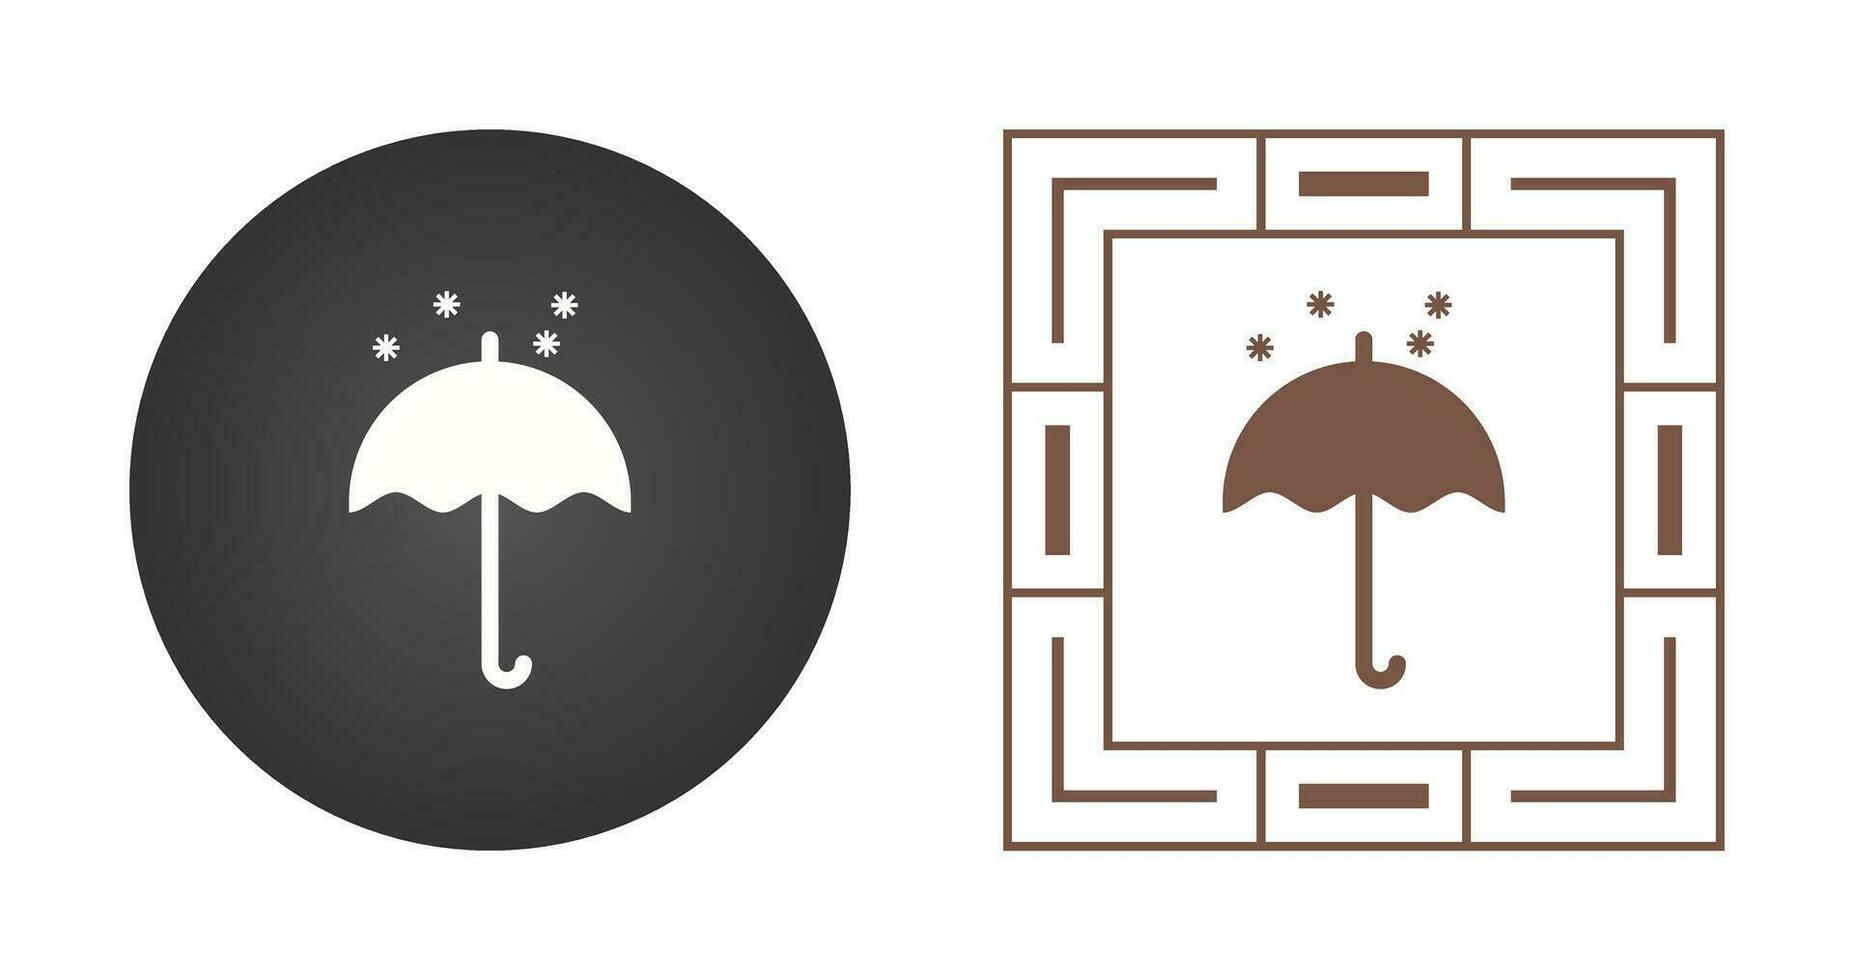 parapluie avec icône de vecteur de neige